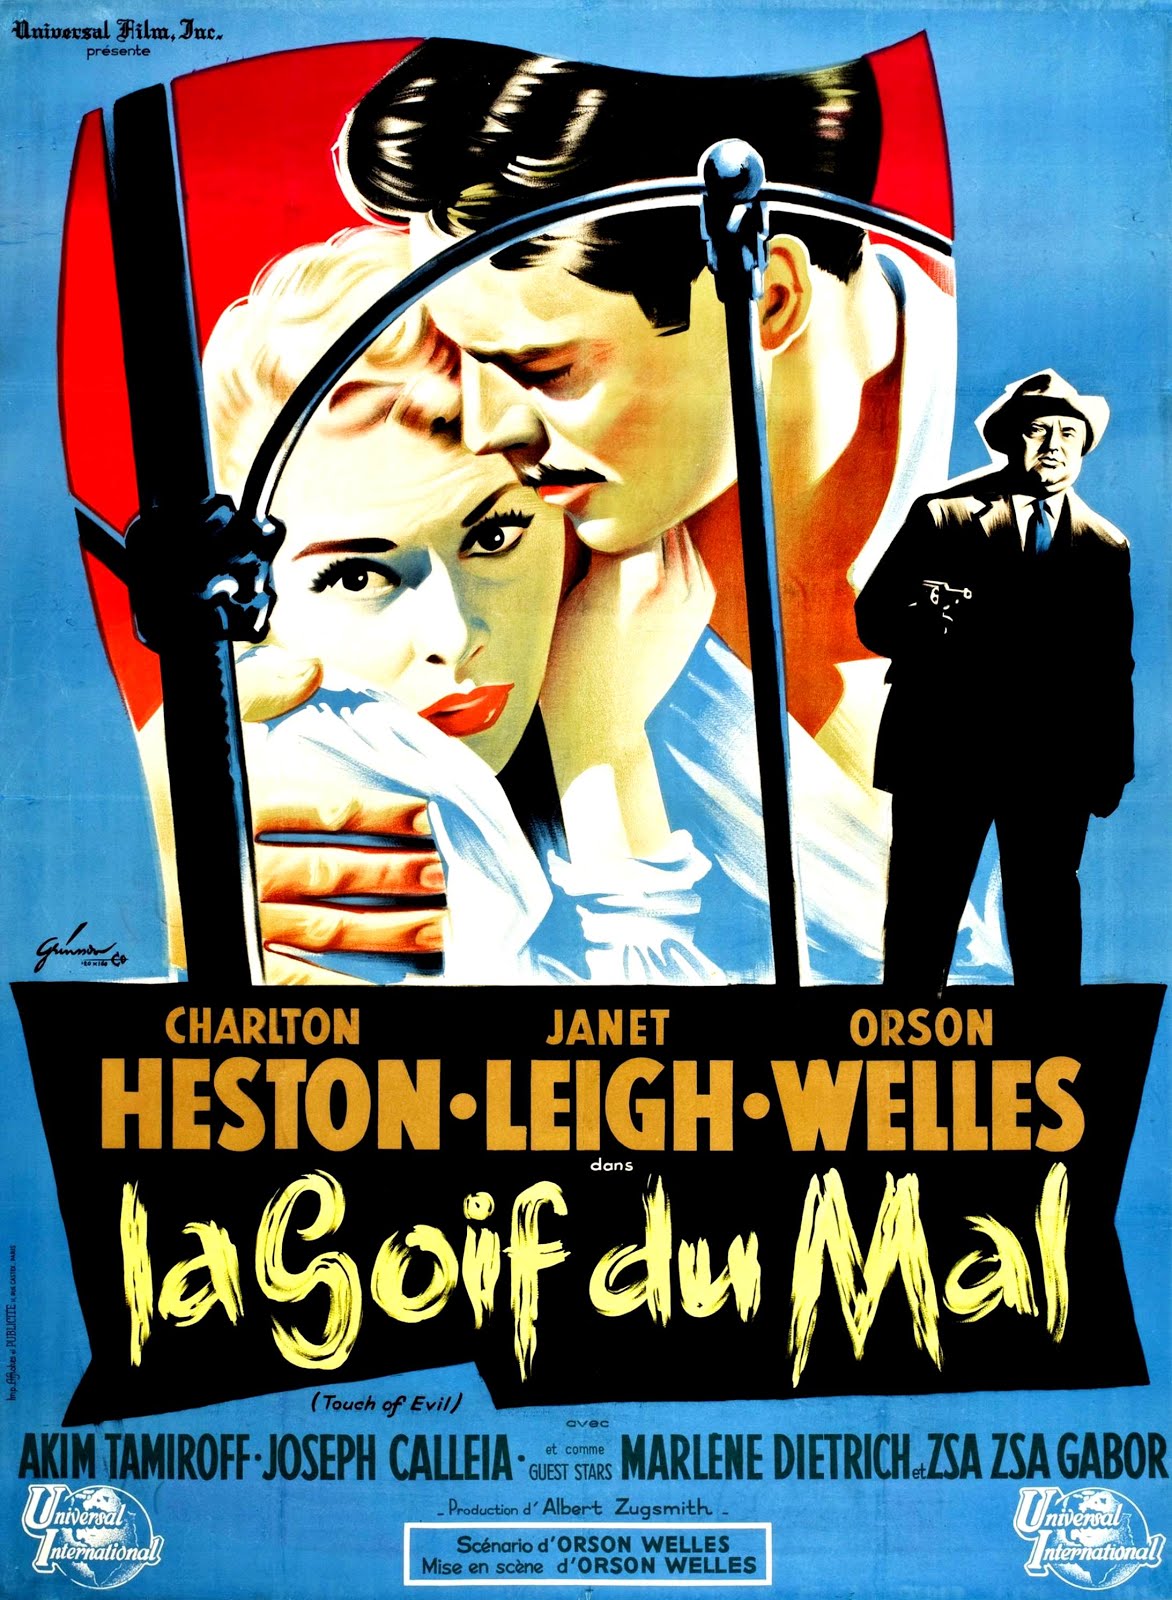 La soif du mal (1957) Orson Welles - Touch of evil (19.02.1957 / 02.04.1957)